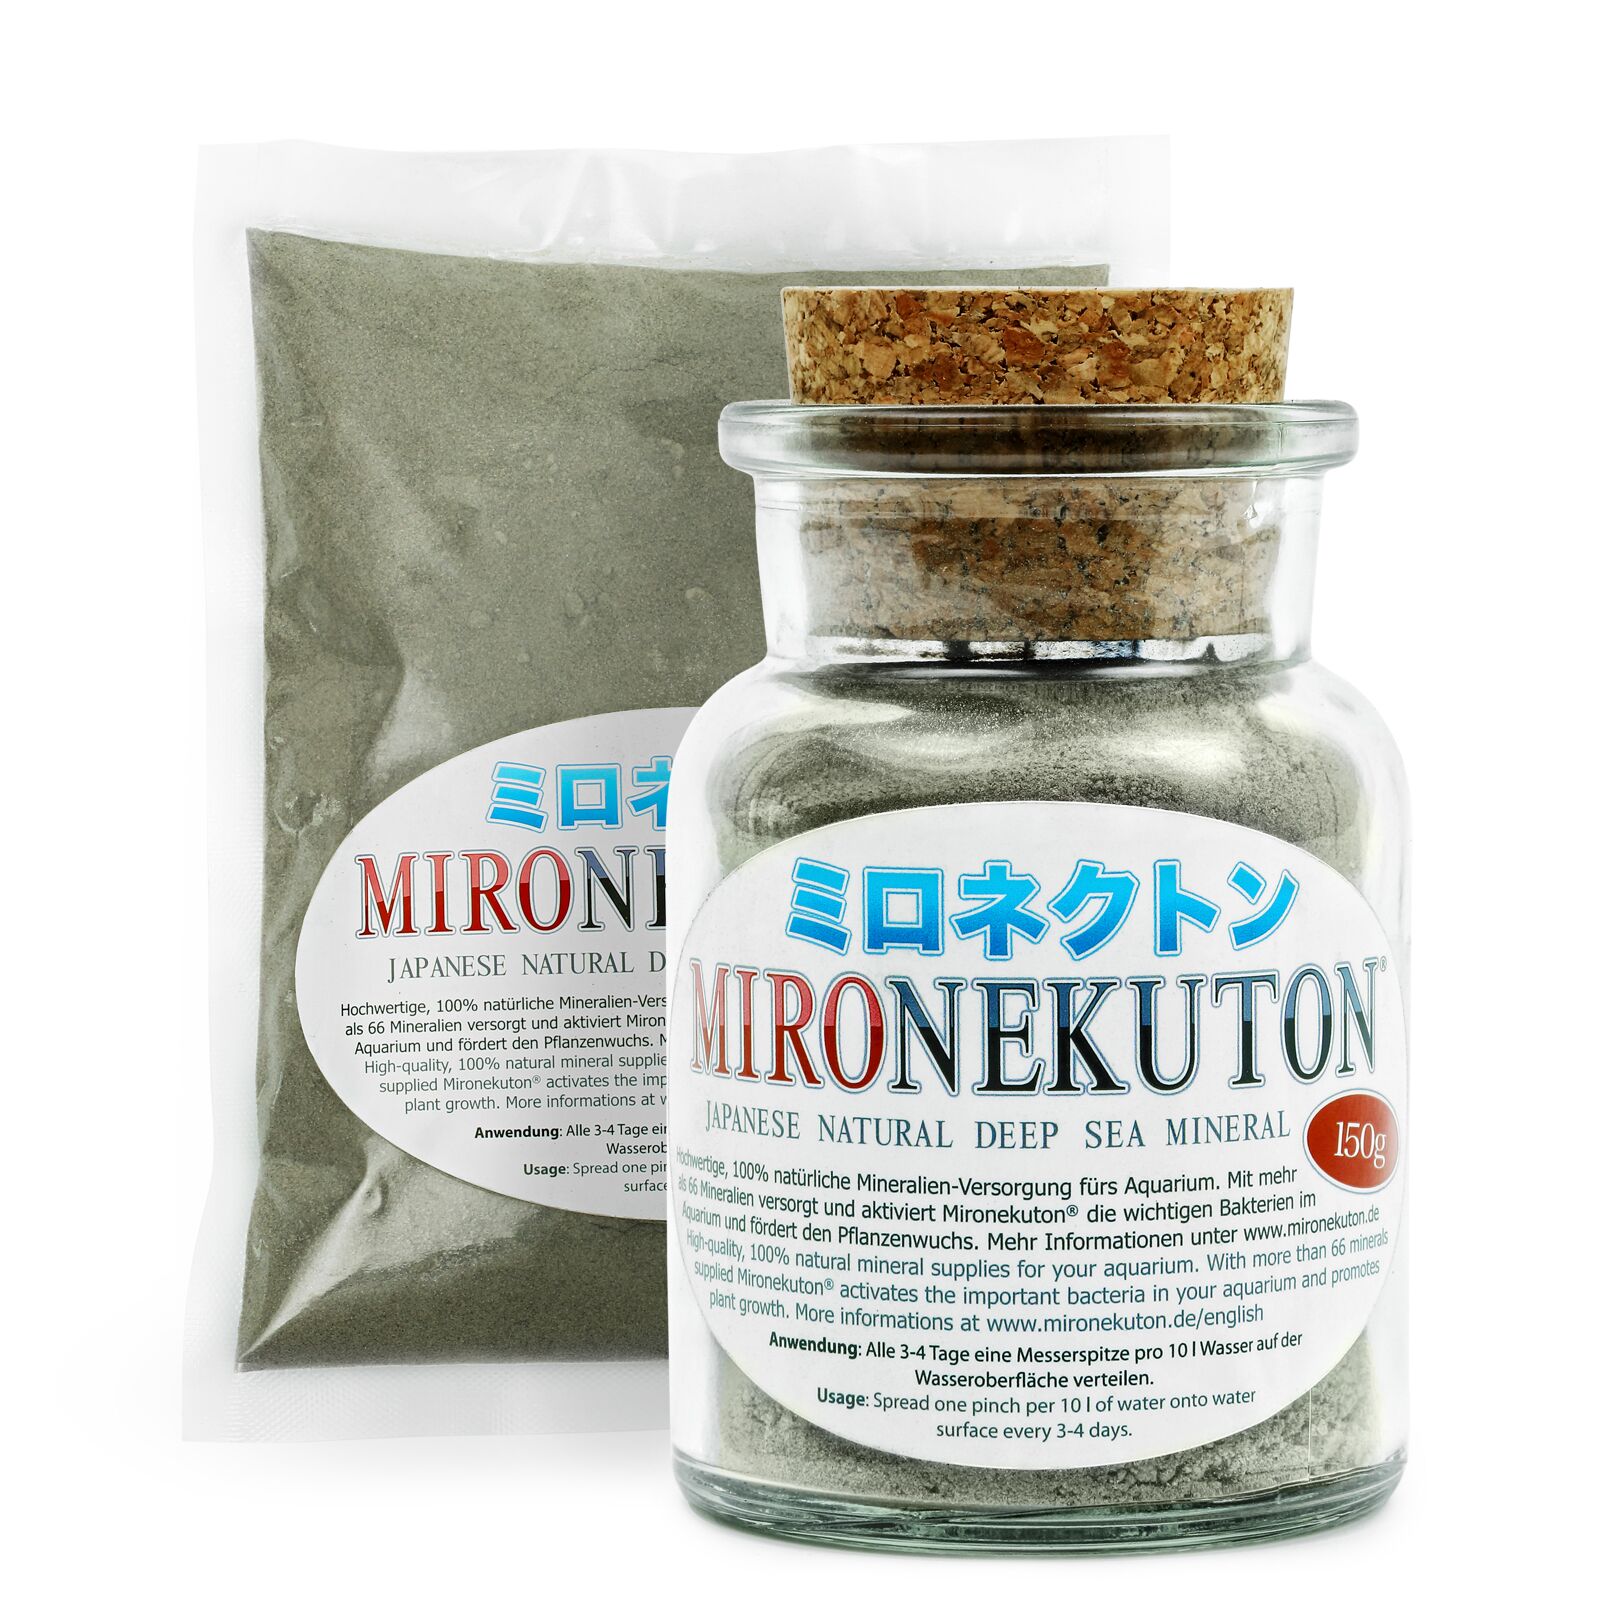 Mironekuton - Powder